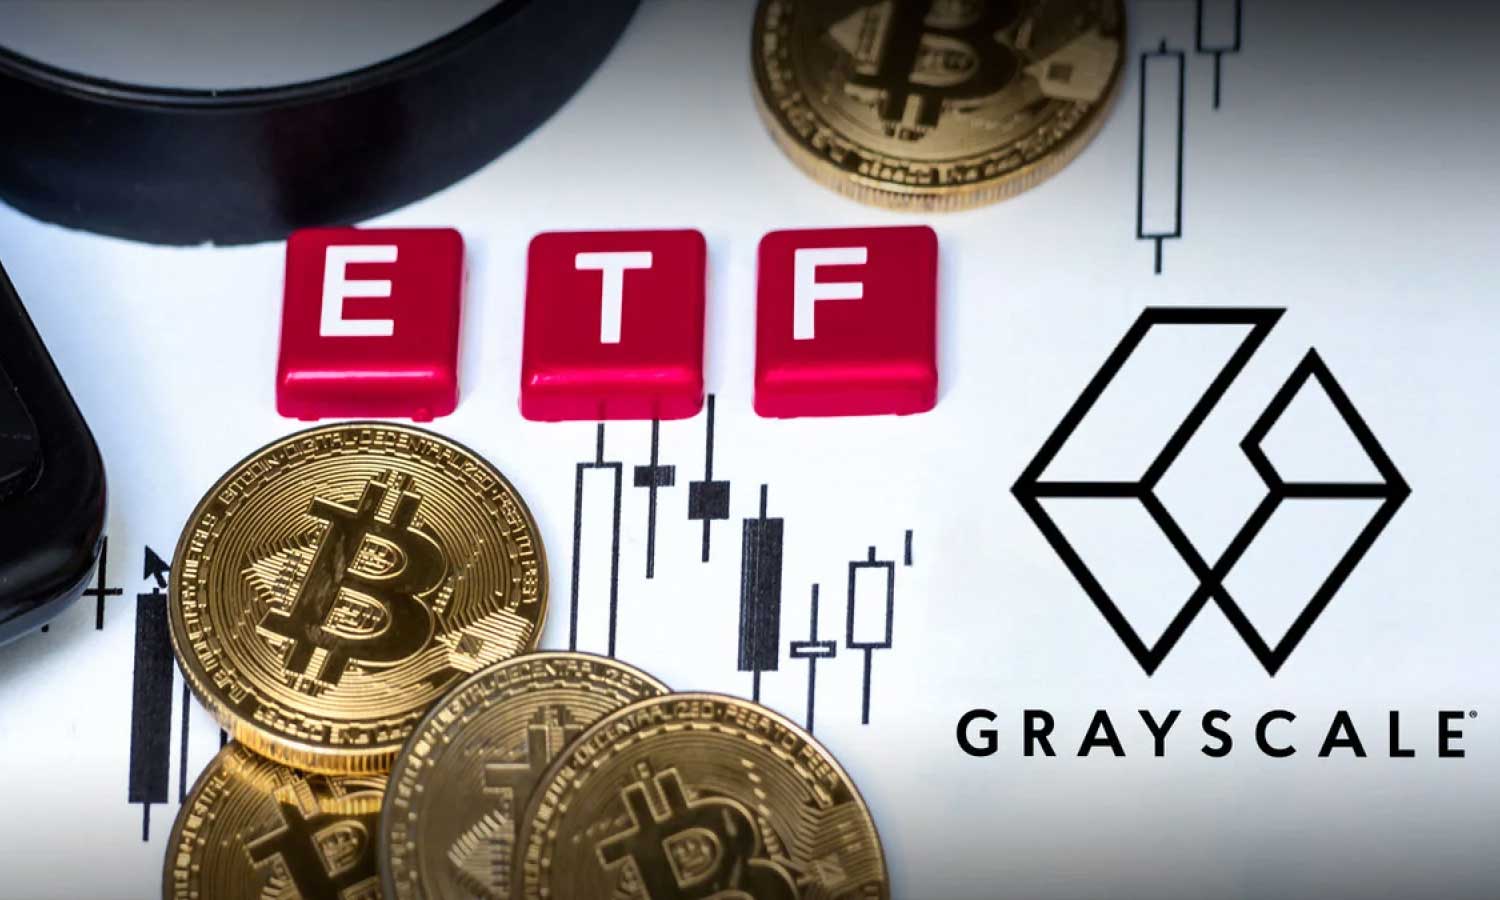 Grayscale Bitcoin ETF’inde Haftalar Süren Satışın Ardından İlk Giriş!